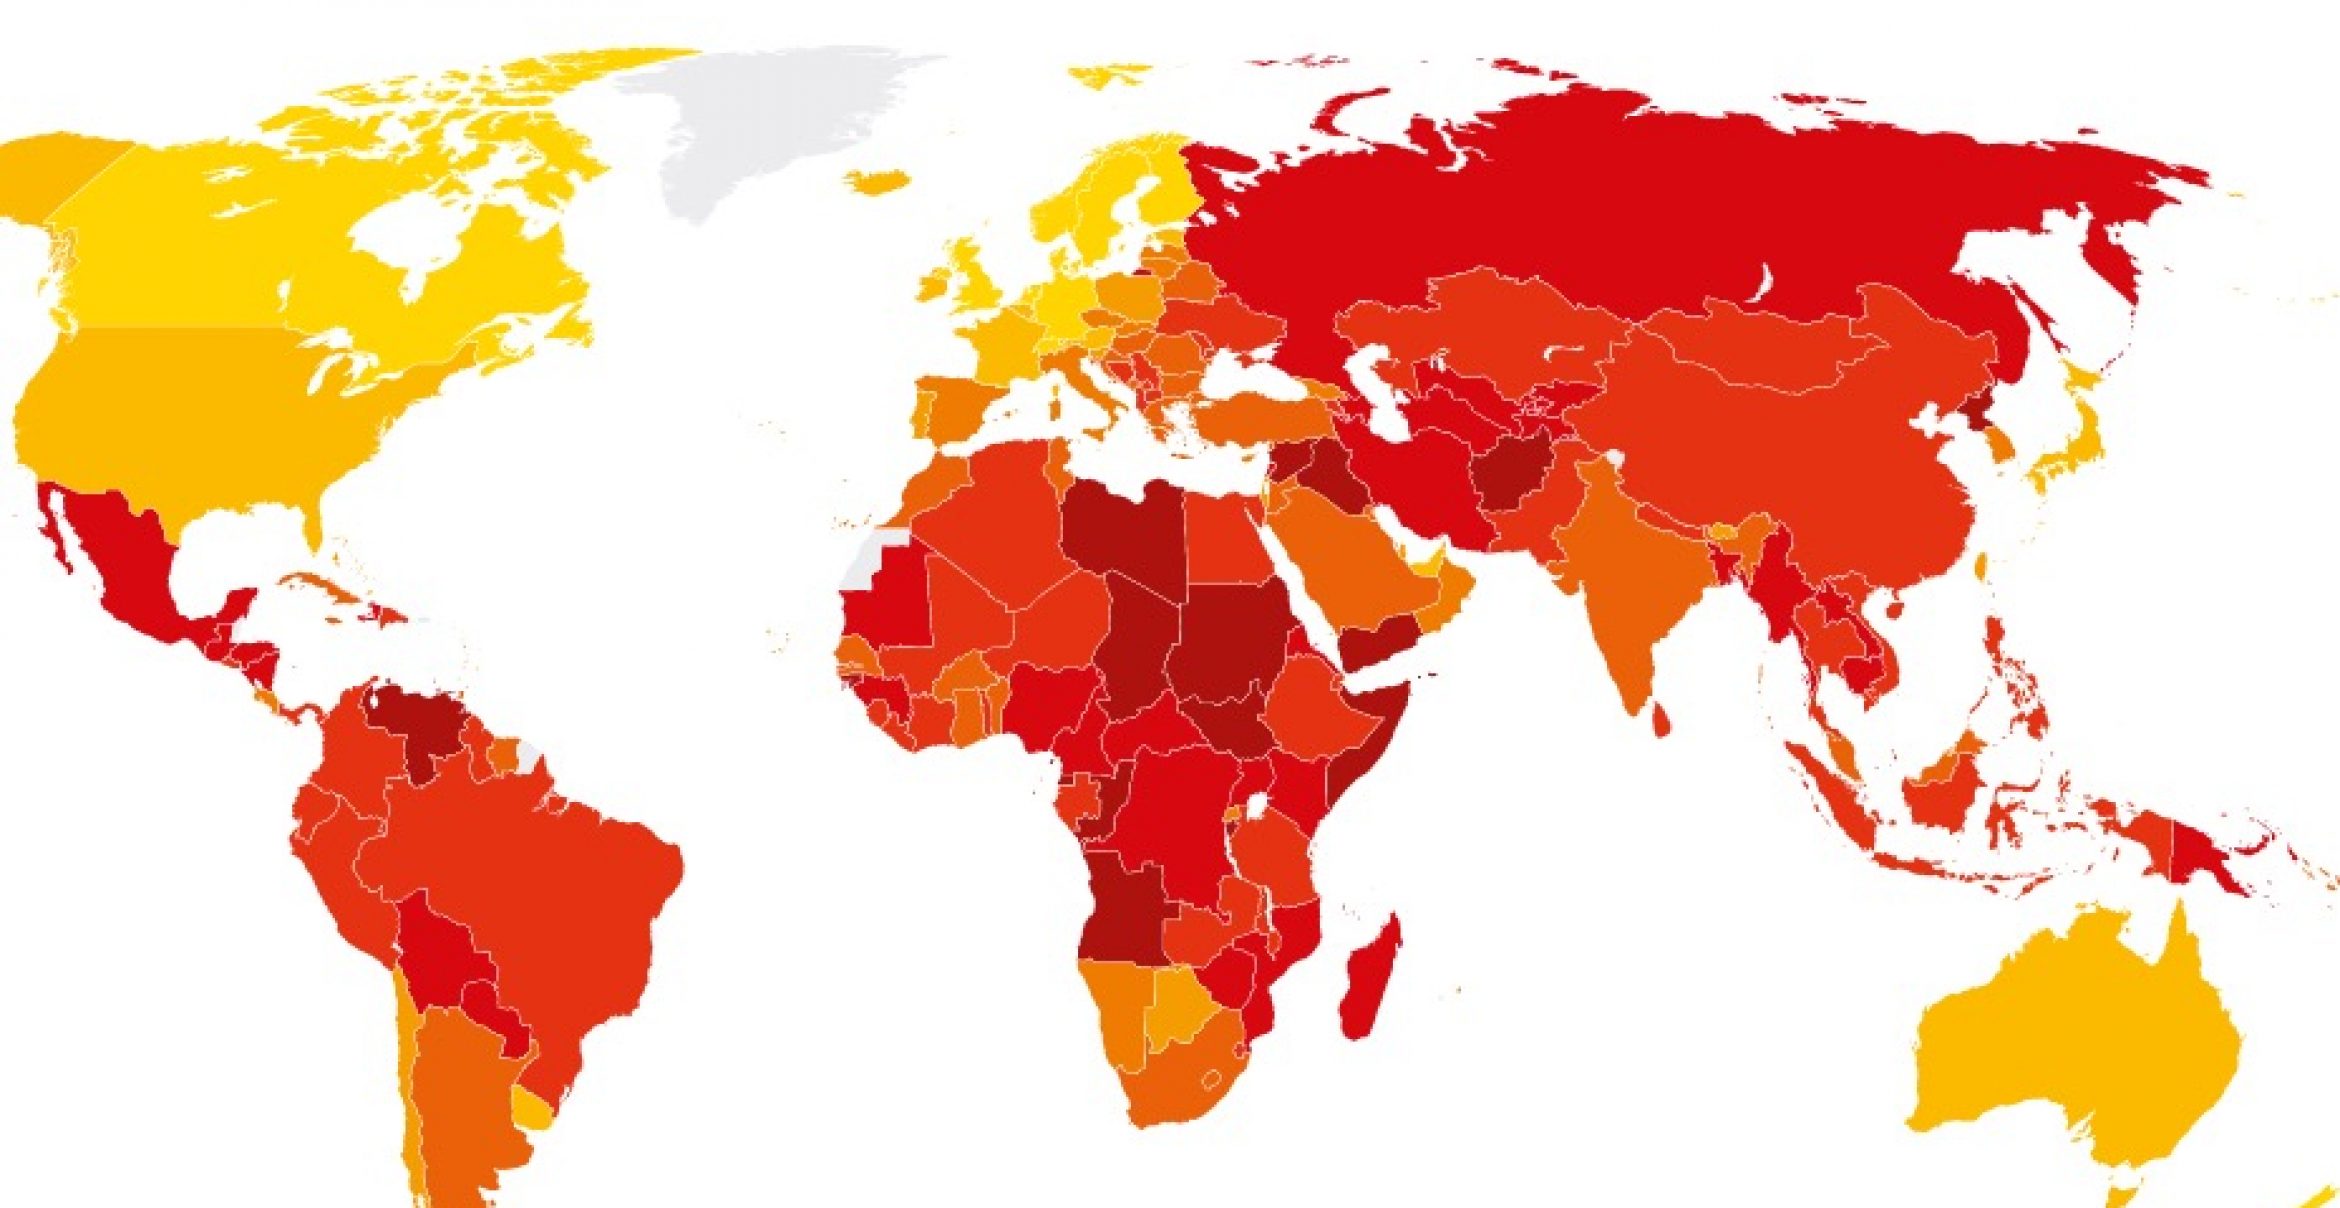 Korruptionsindex 2018: Mehr Korruption und weniger Demokratie weltweit